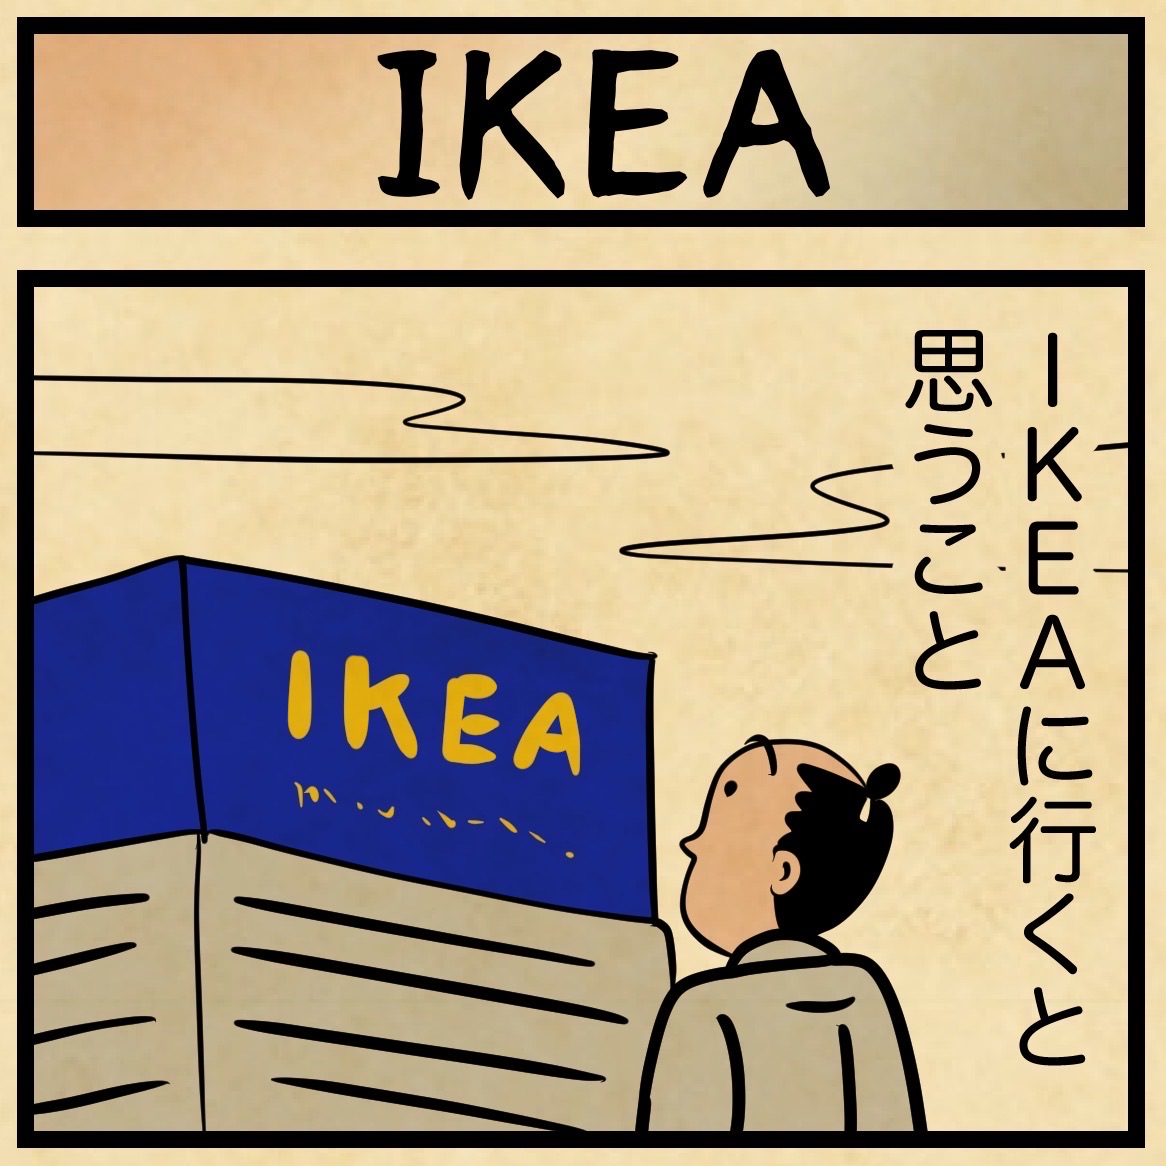 Ikeaに行くと驚きがたくさん 山田全自動のあるある日記 Powered By ライブドアブログ